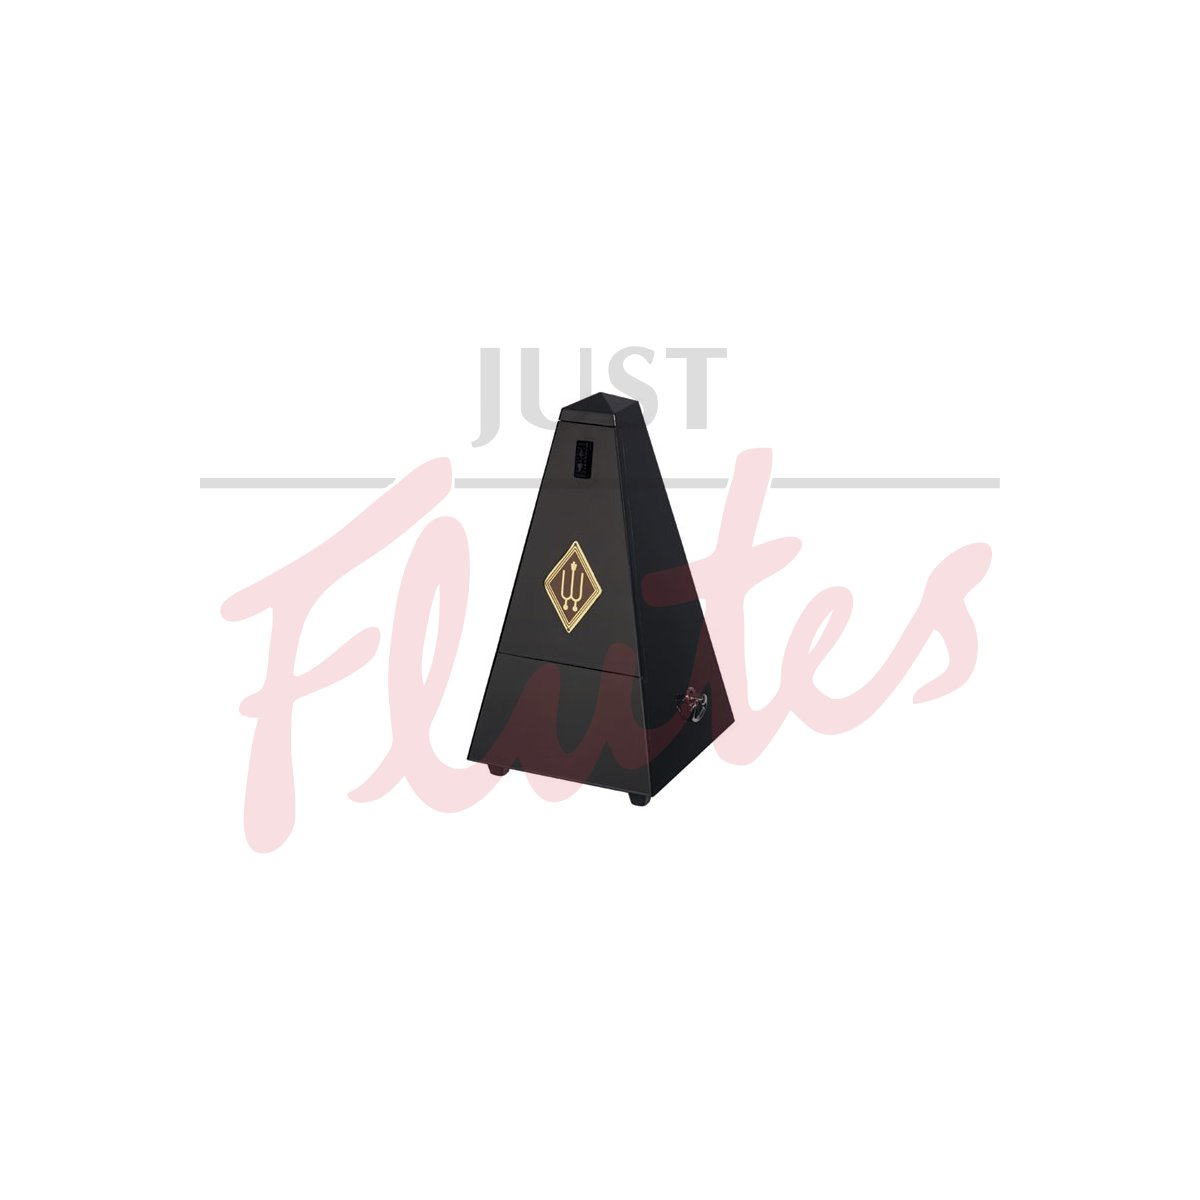 Wittner 806 Pyramid Metronome, Wood, Highly Polished Black Finish